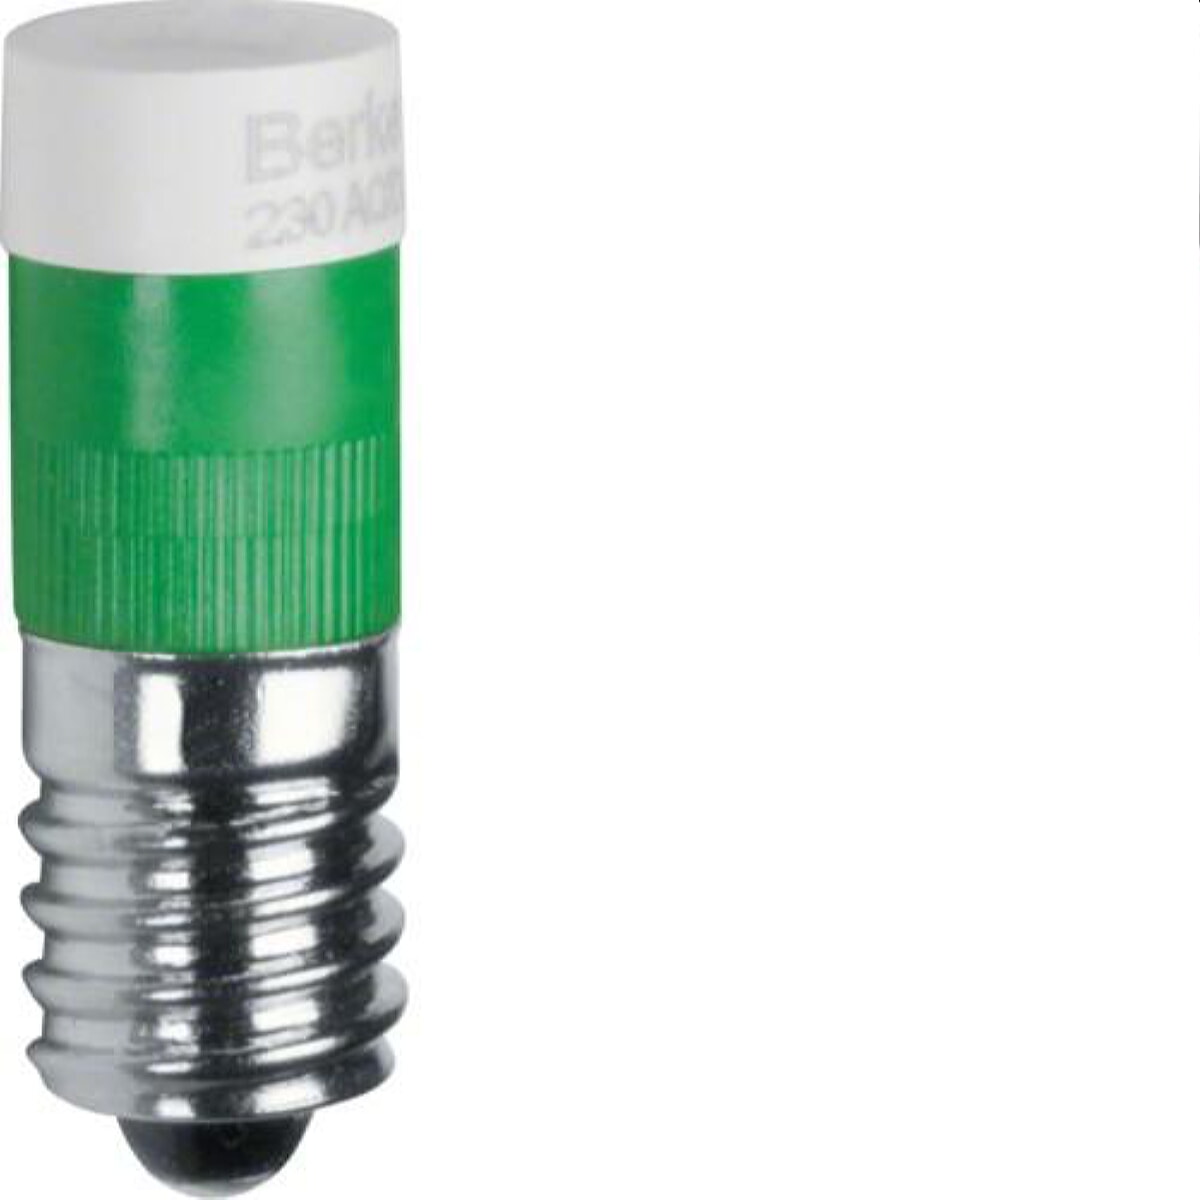 Berker LED-Leuchtmittel M3167803 E10 gruen